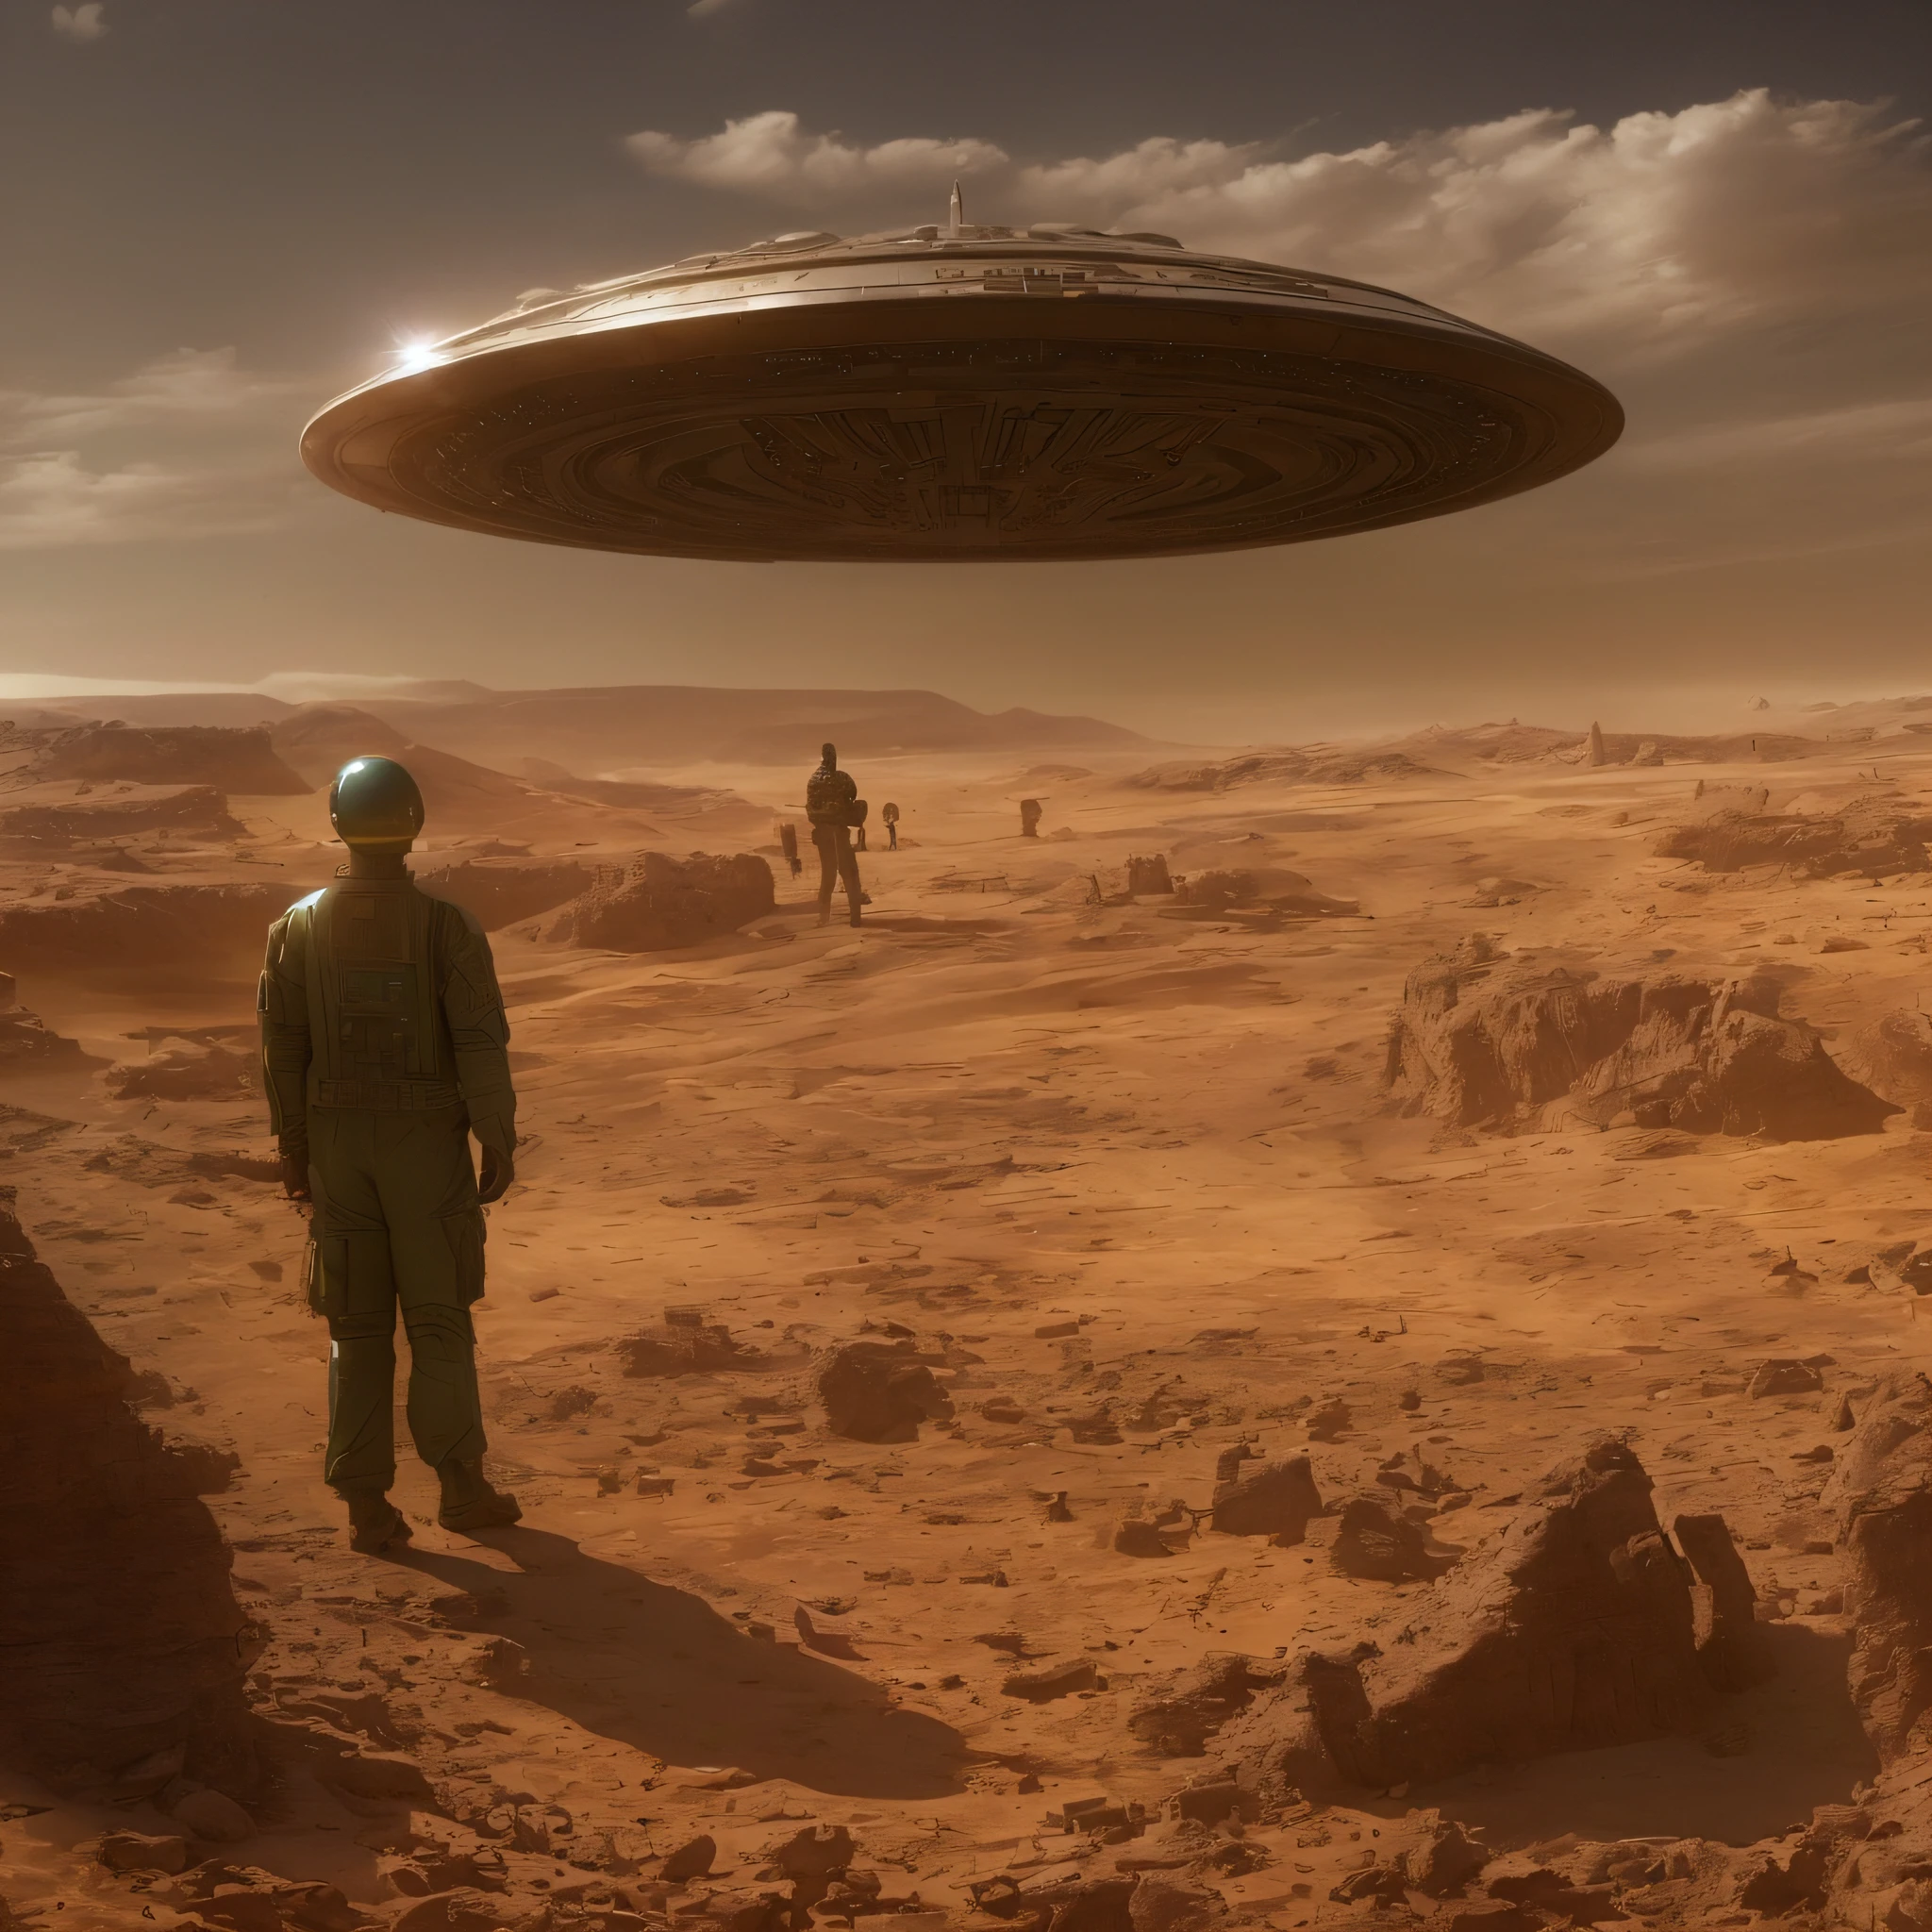 Raumschiff fliegt über einer Wüstenlandschaft mit einem Mann in Militäruniform, Stargate steht in der Wüste, dargestellt als Science-Fiction-Szene, bevölkert von Außerirdischen und Menschen, UFO-Landung, dramatisches Sci-Fi-Film-Standbild, Raumschiff auf einem ausgetrockneten Flussbett, Retro Sci - Bild von FI, ufo aliens, Ein episches SciFi-Filmstill, Raumschiff fliegt in der Ferne, Außerirdische erobern die Erde